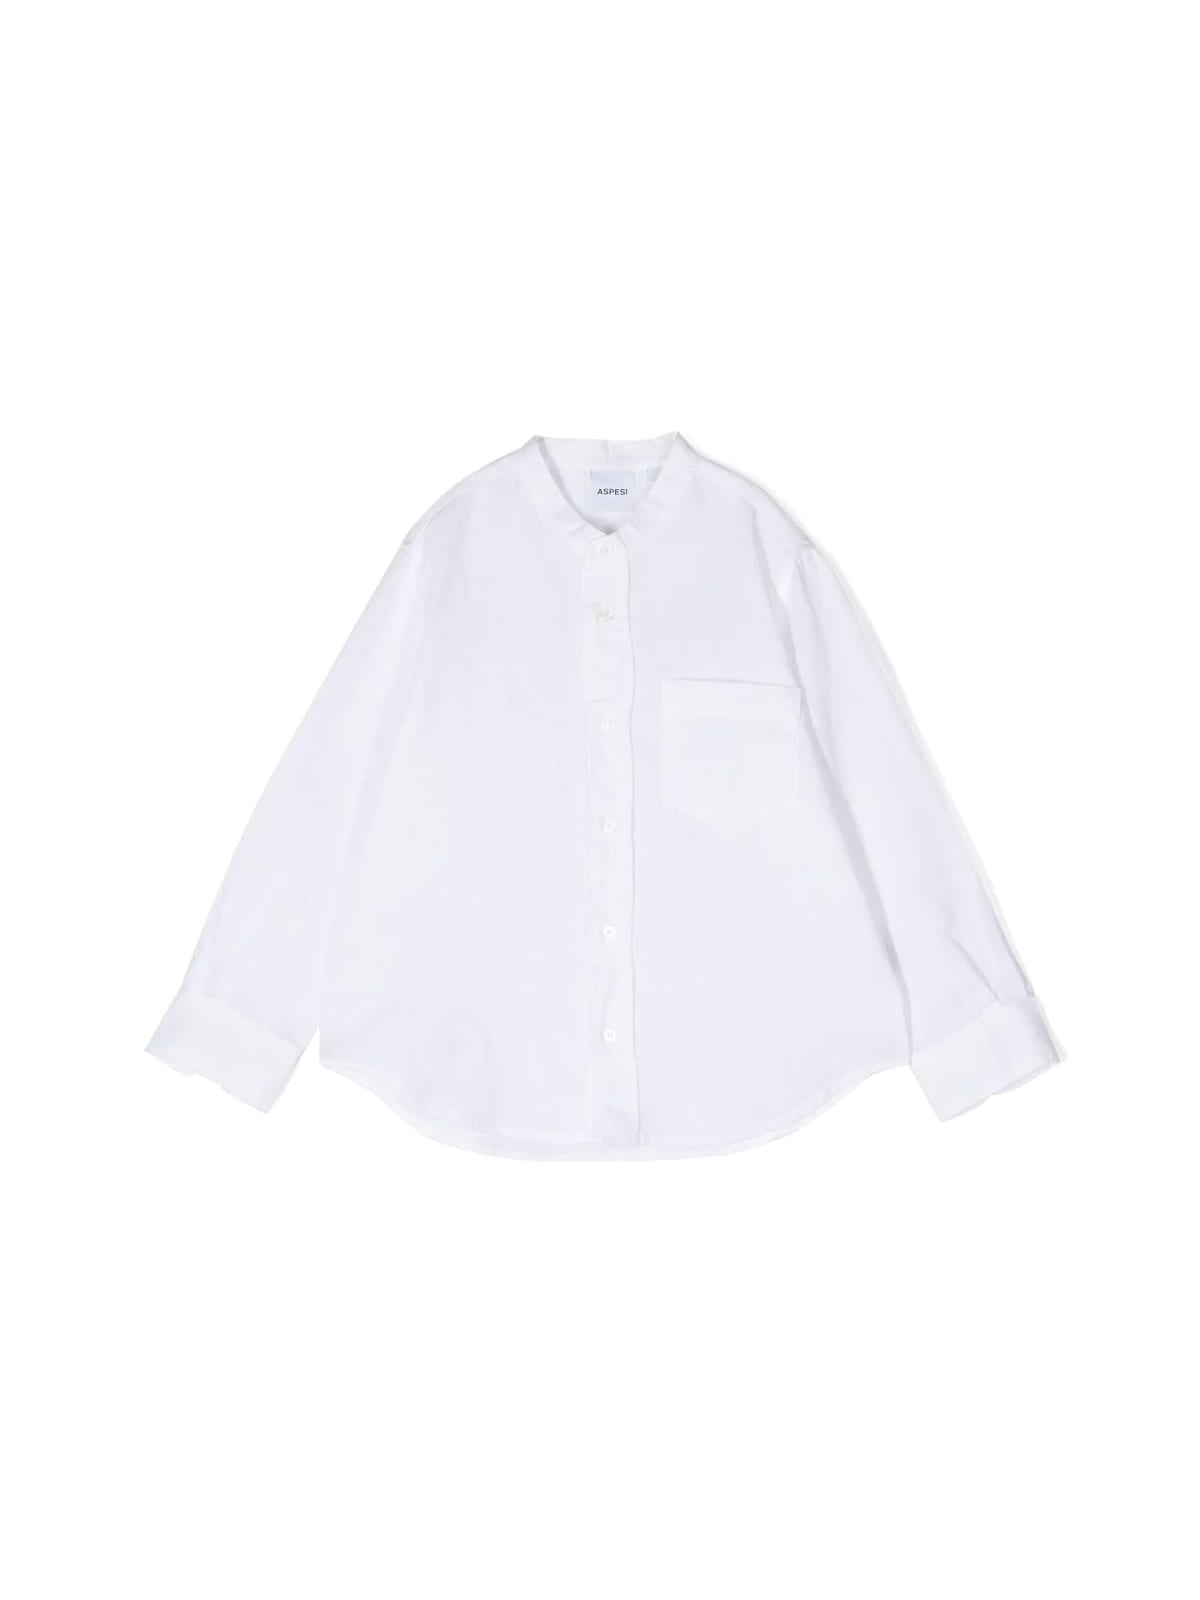 Aspesi Kids' Long Sleeves Shirt In White